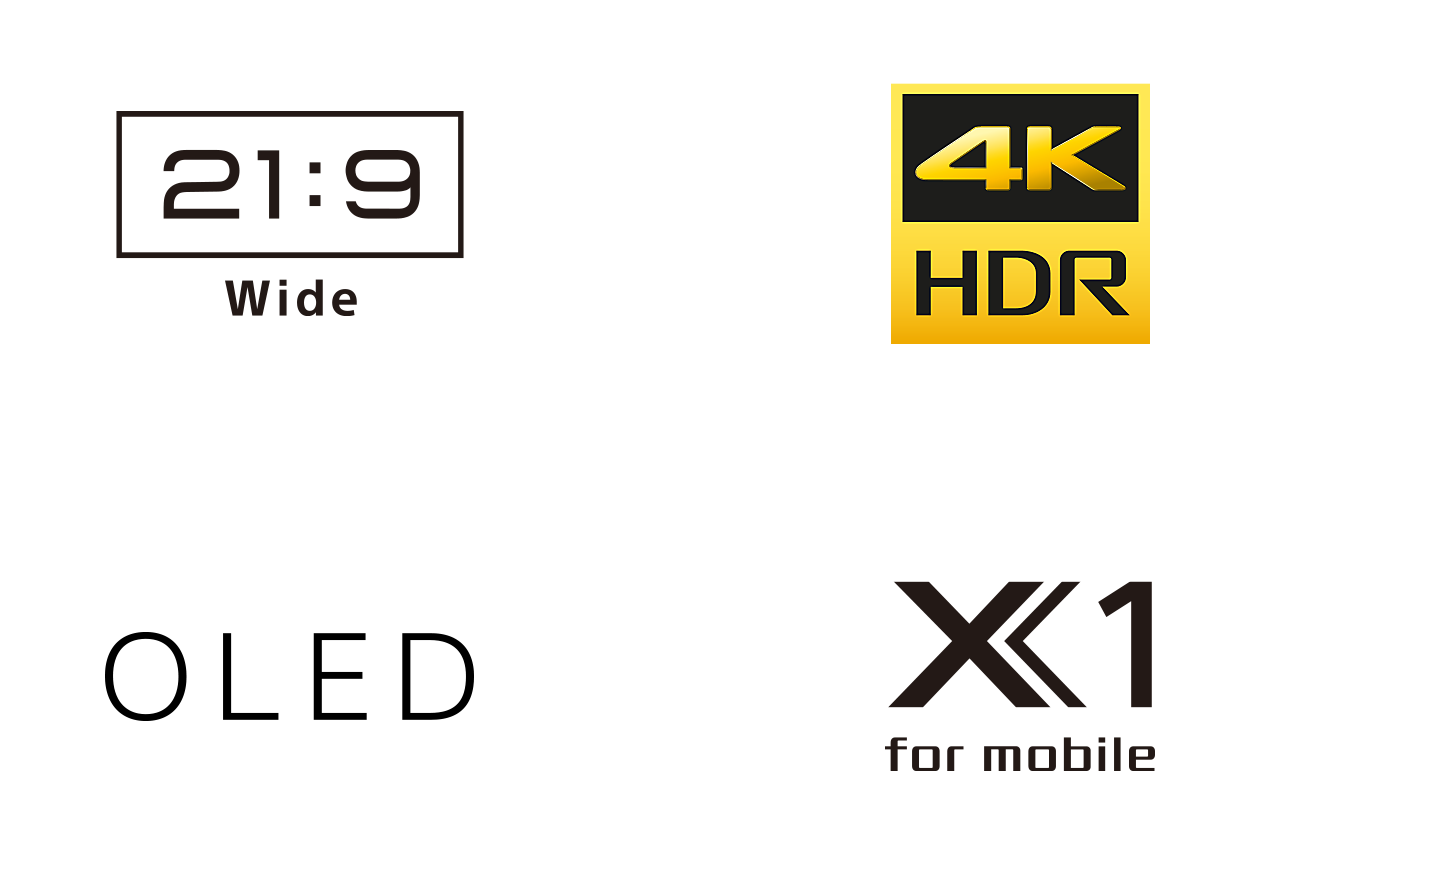 Logotipi 21:9 Wide, 4K HDR, OLED i X1 for mobile